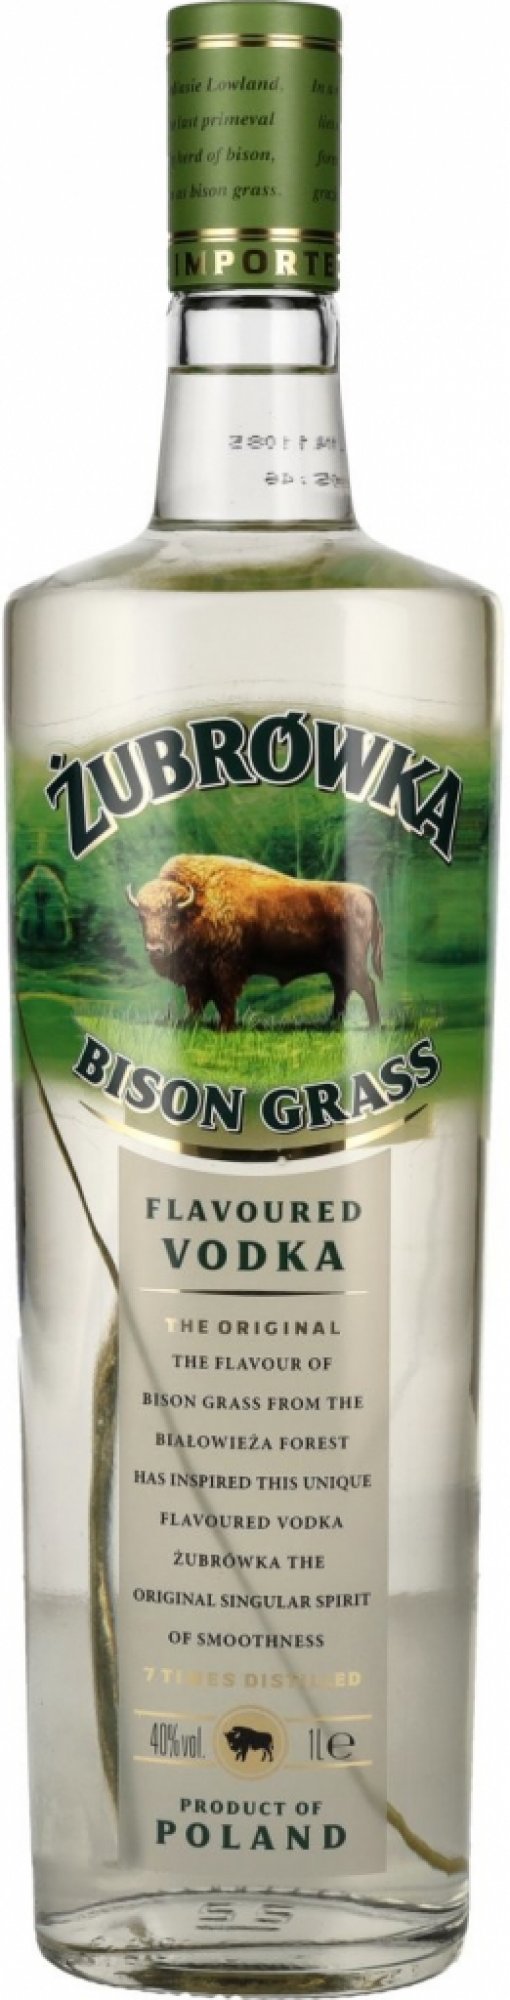 Vodka Zubrowka Bisson Grass 40% 1L